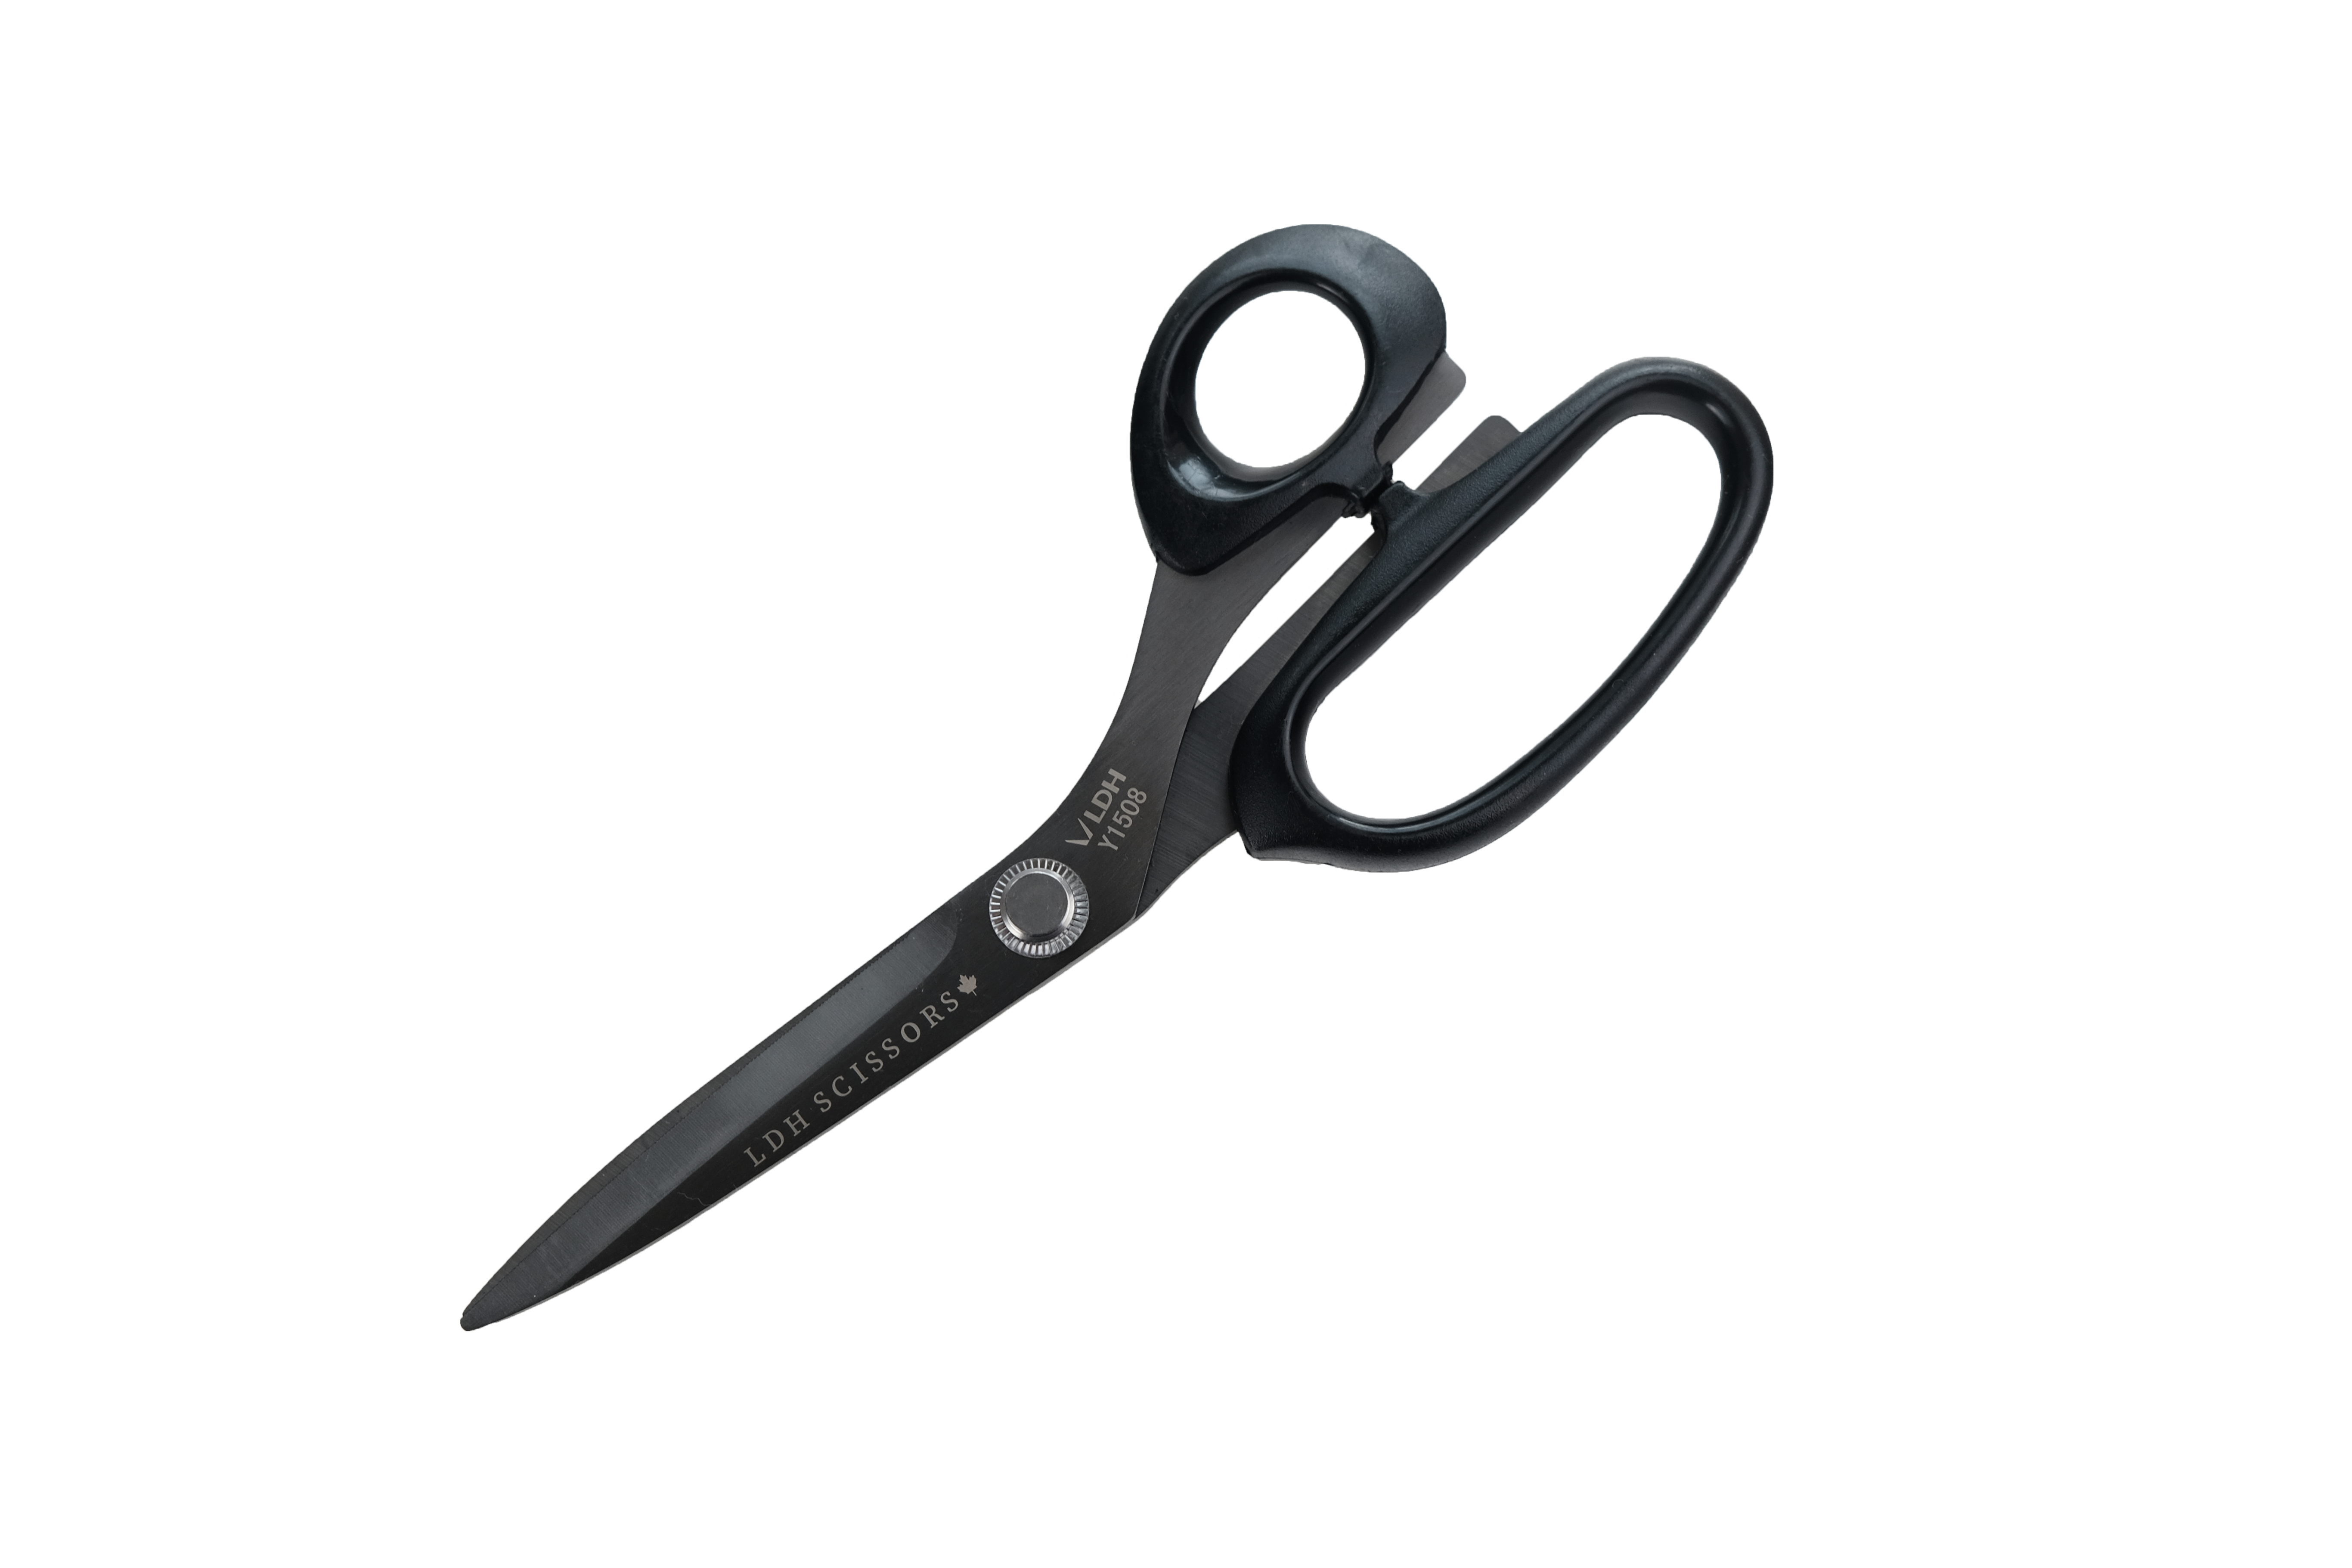 Matte Black Flower Power Mini Scissors